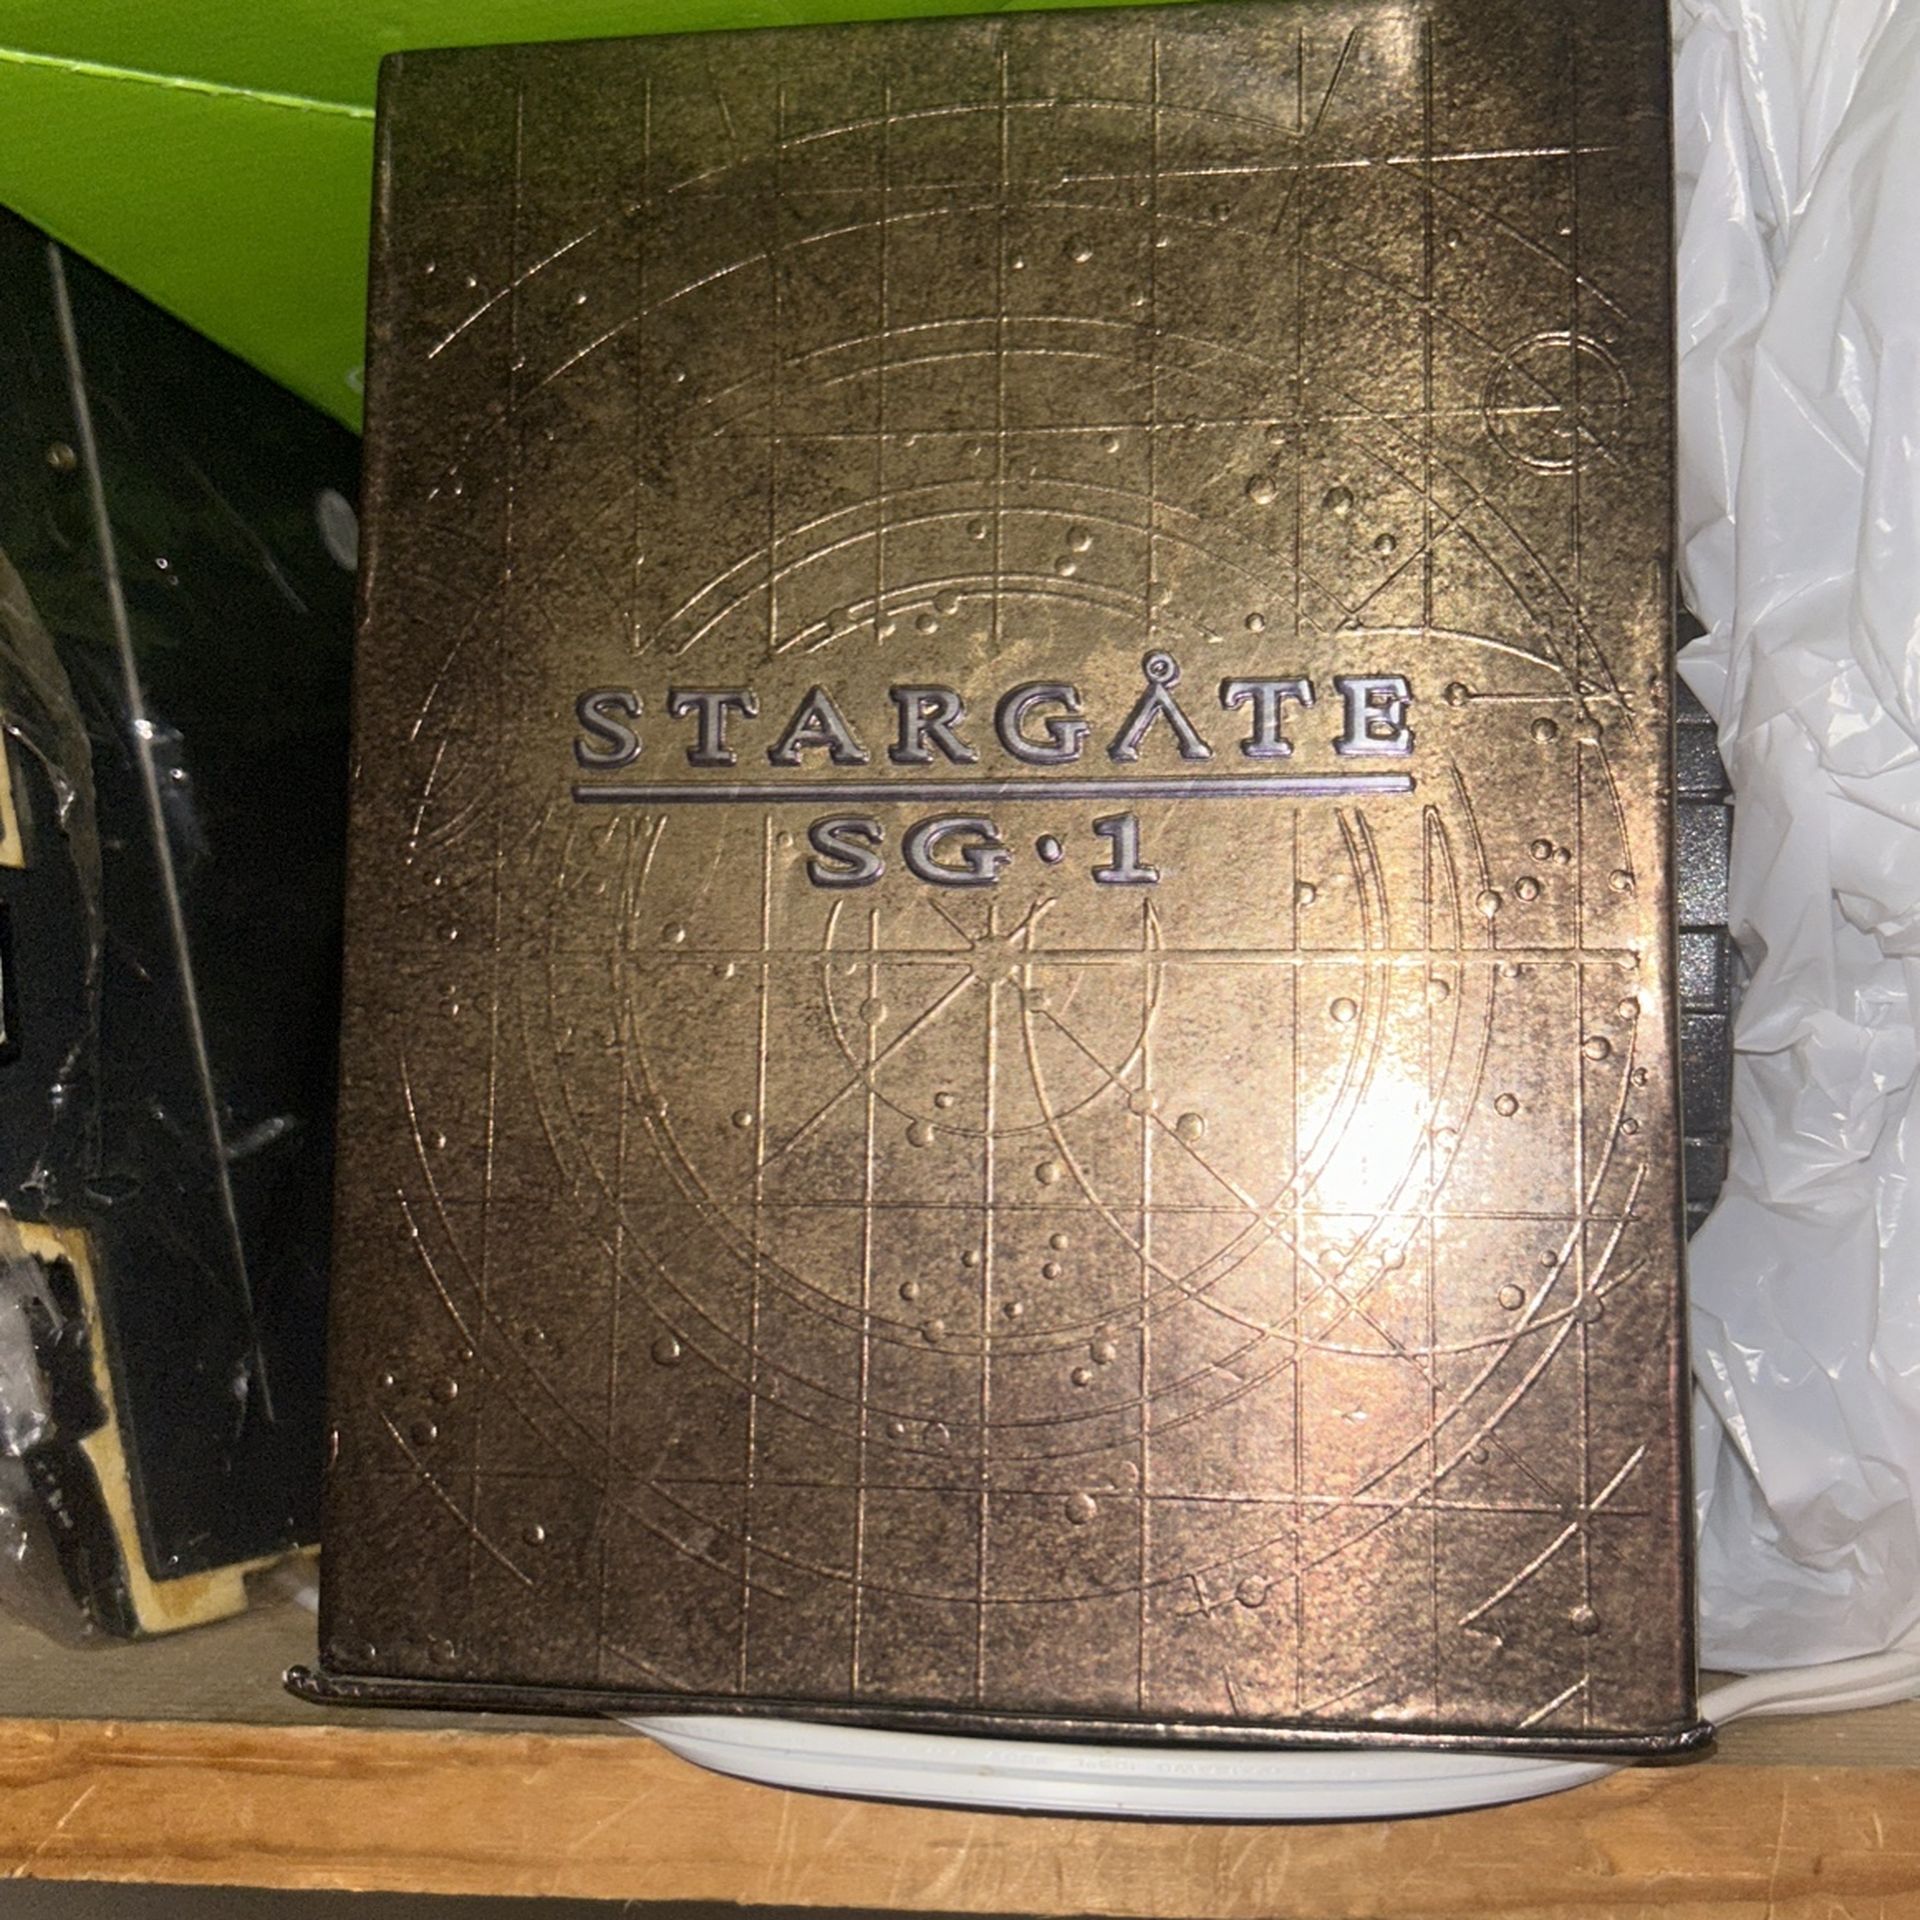 Stargate Sg1 DVD Box Set